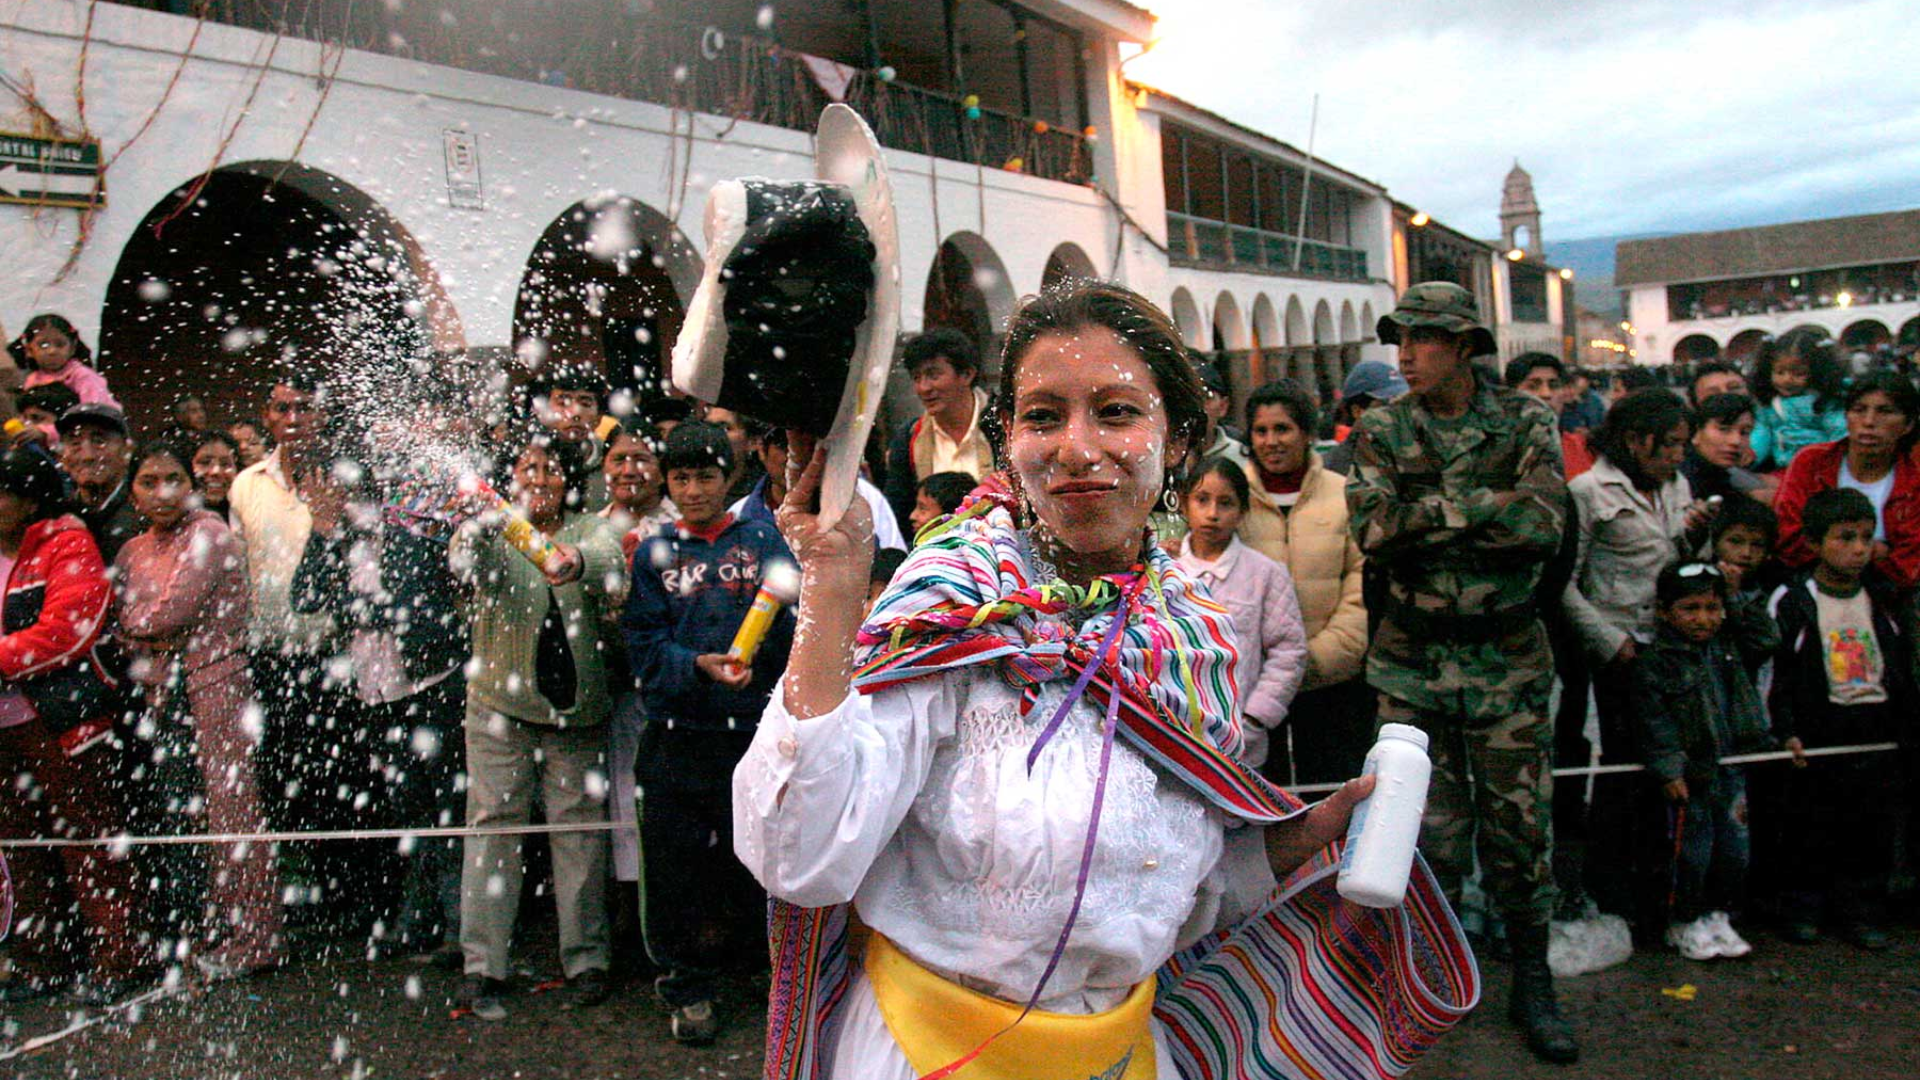 El Perú se llena de alegría y cultura en los primeros meses del año con los carnavales de verano. (Andina)